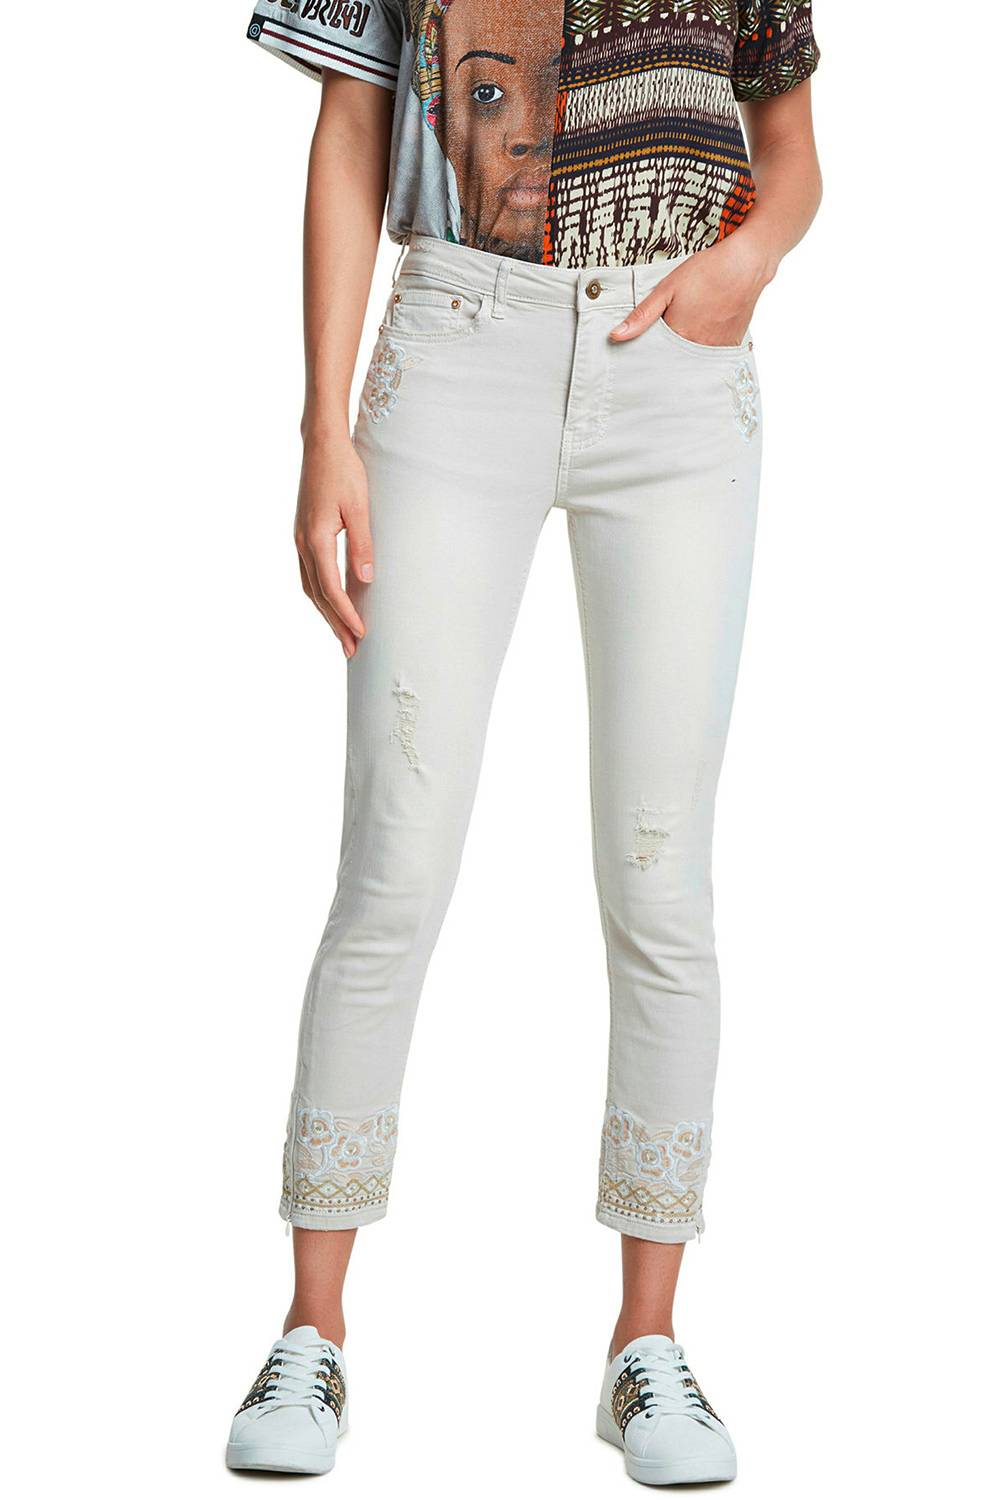 DESIGUAL - Jeans de Algodón Mujer